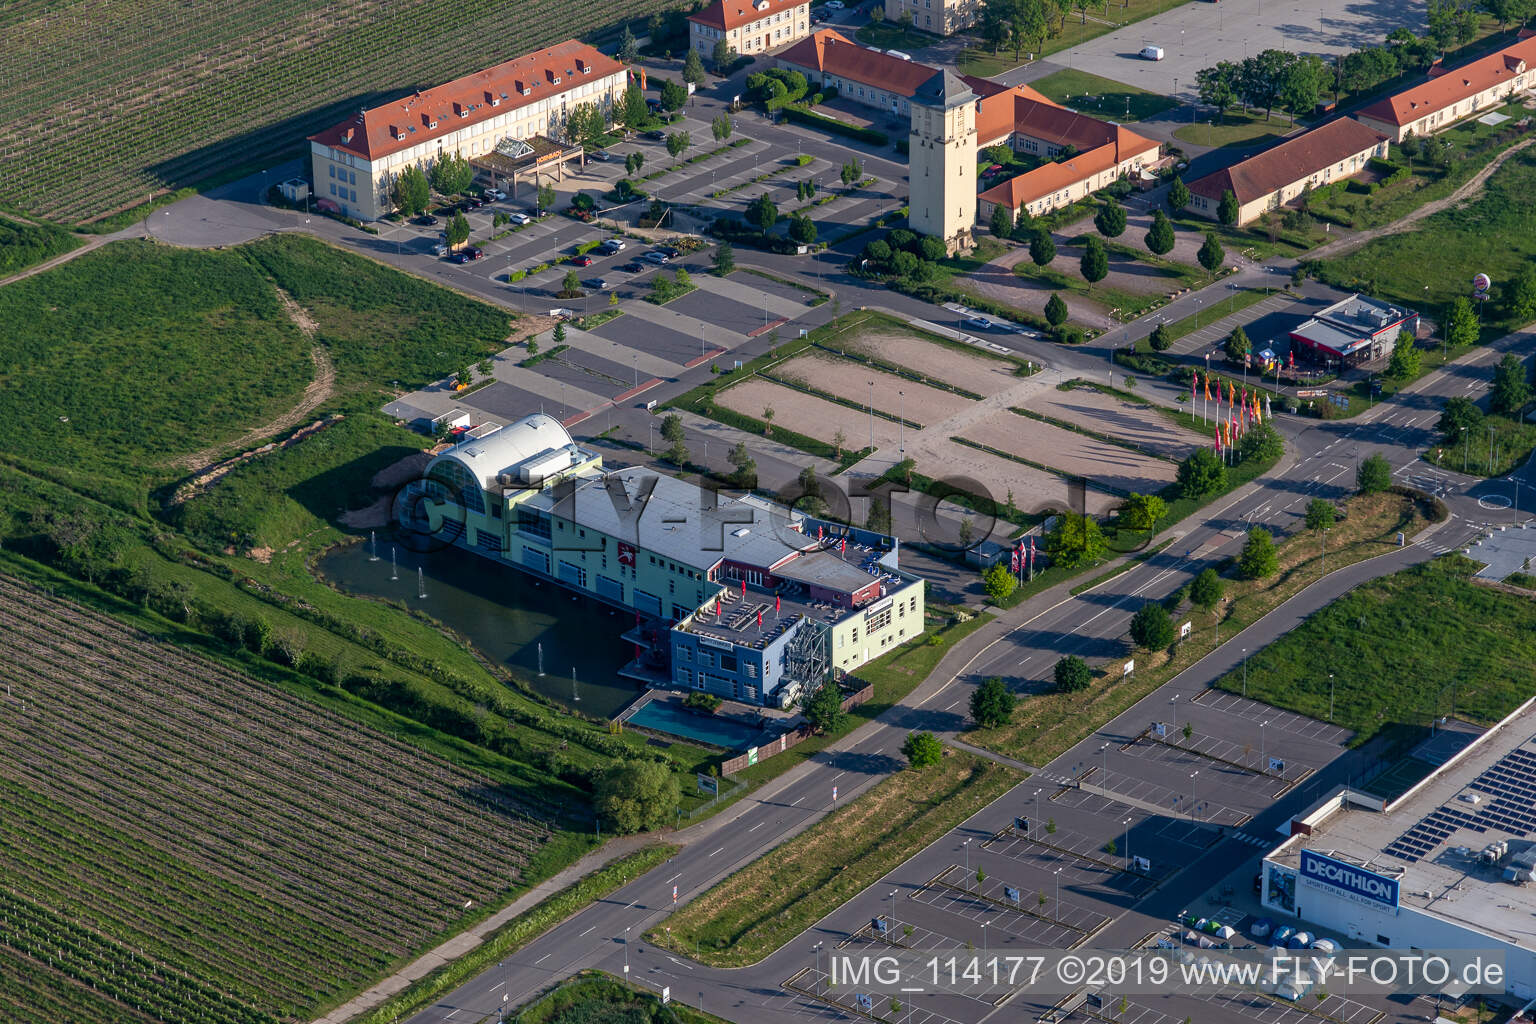 Le Quartier Hornbach in Neustadt an der Weinstraße im Bundesland Rheinland-Pfalz, Deutschland vom Flugzeug aus